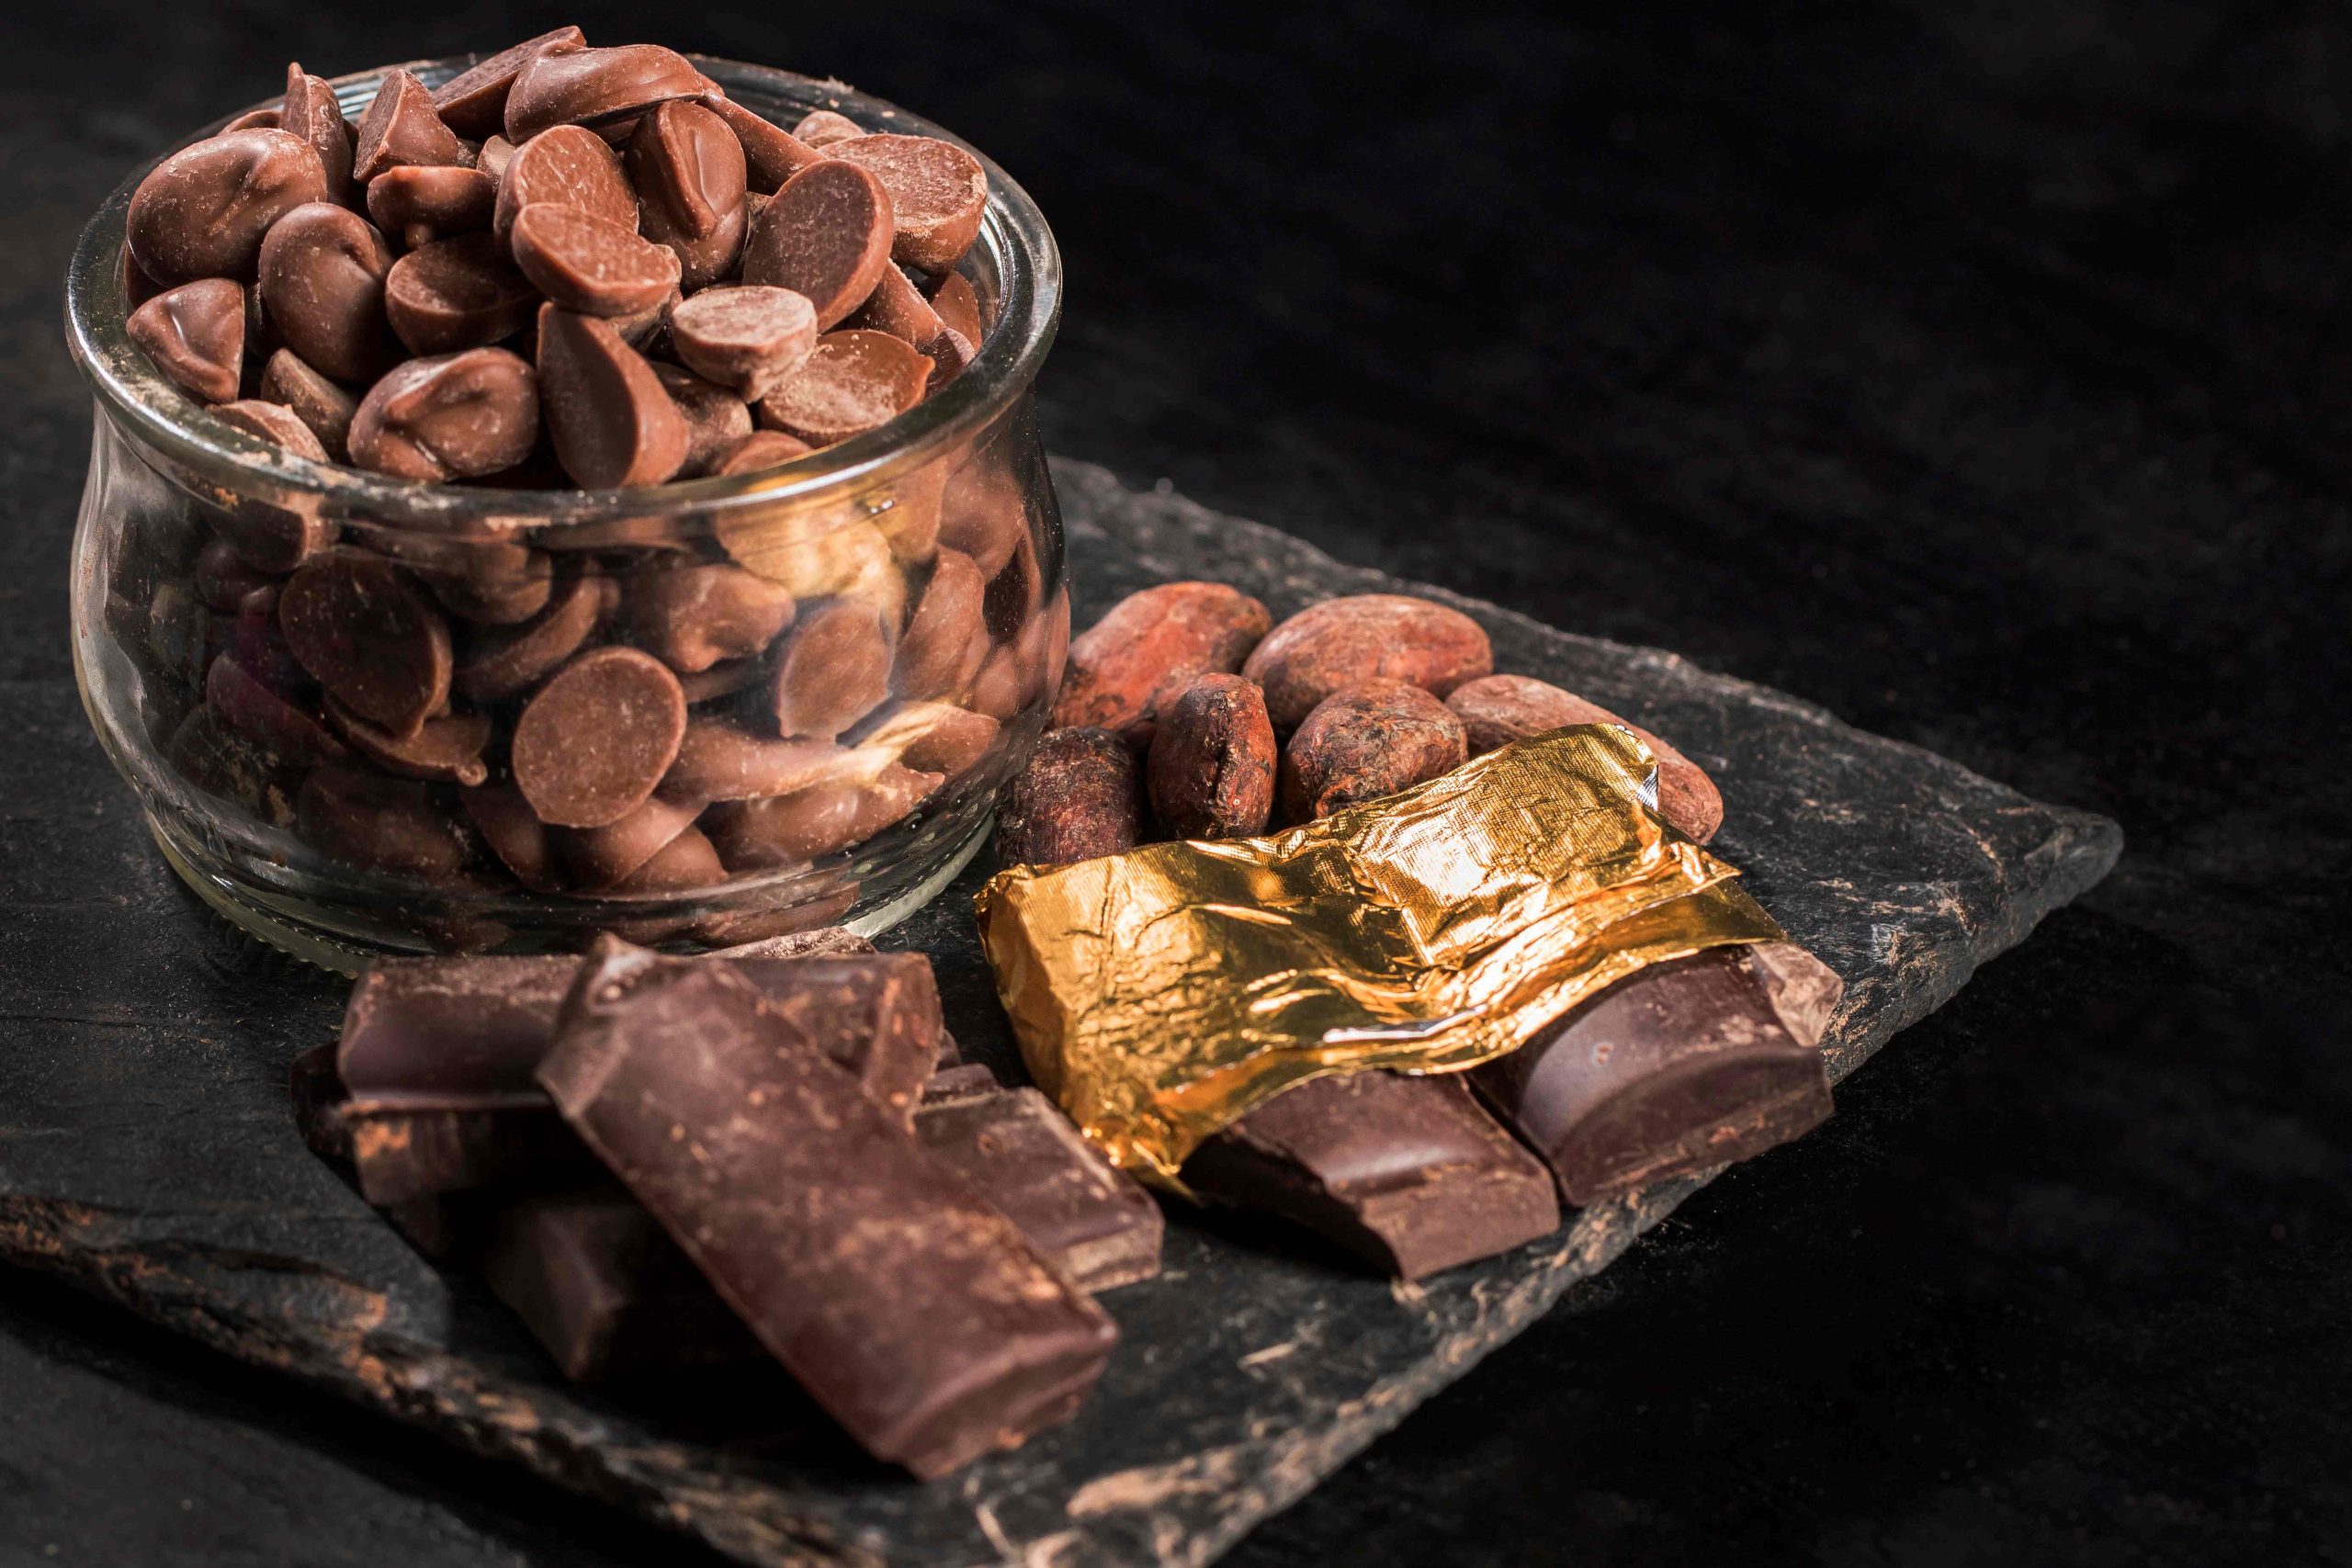 Vendas de chocolates de alta qualidade devem crescer 17,6% no Brasil